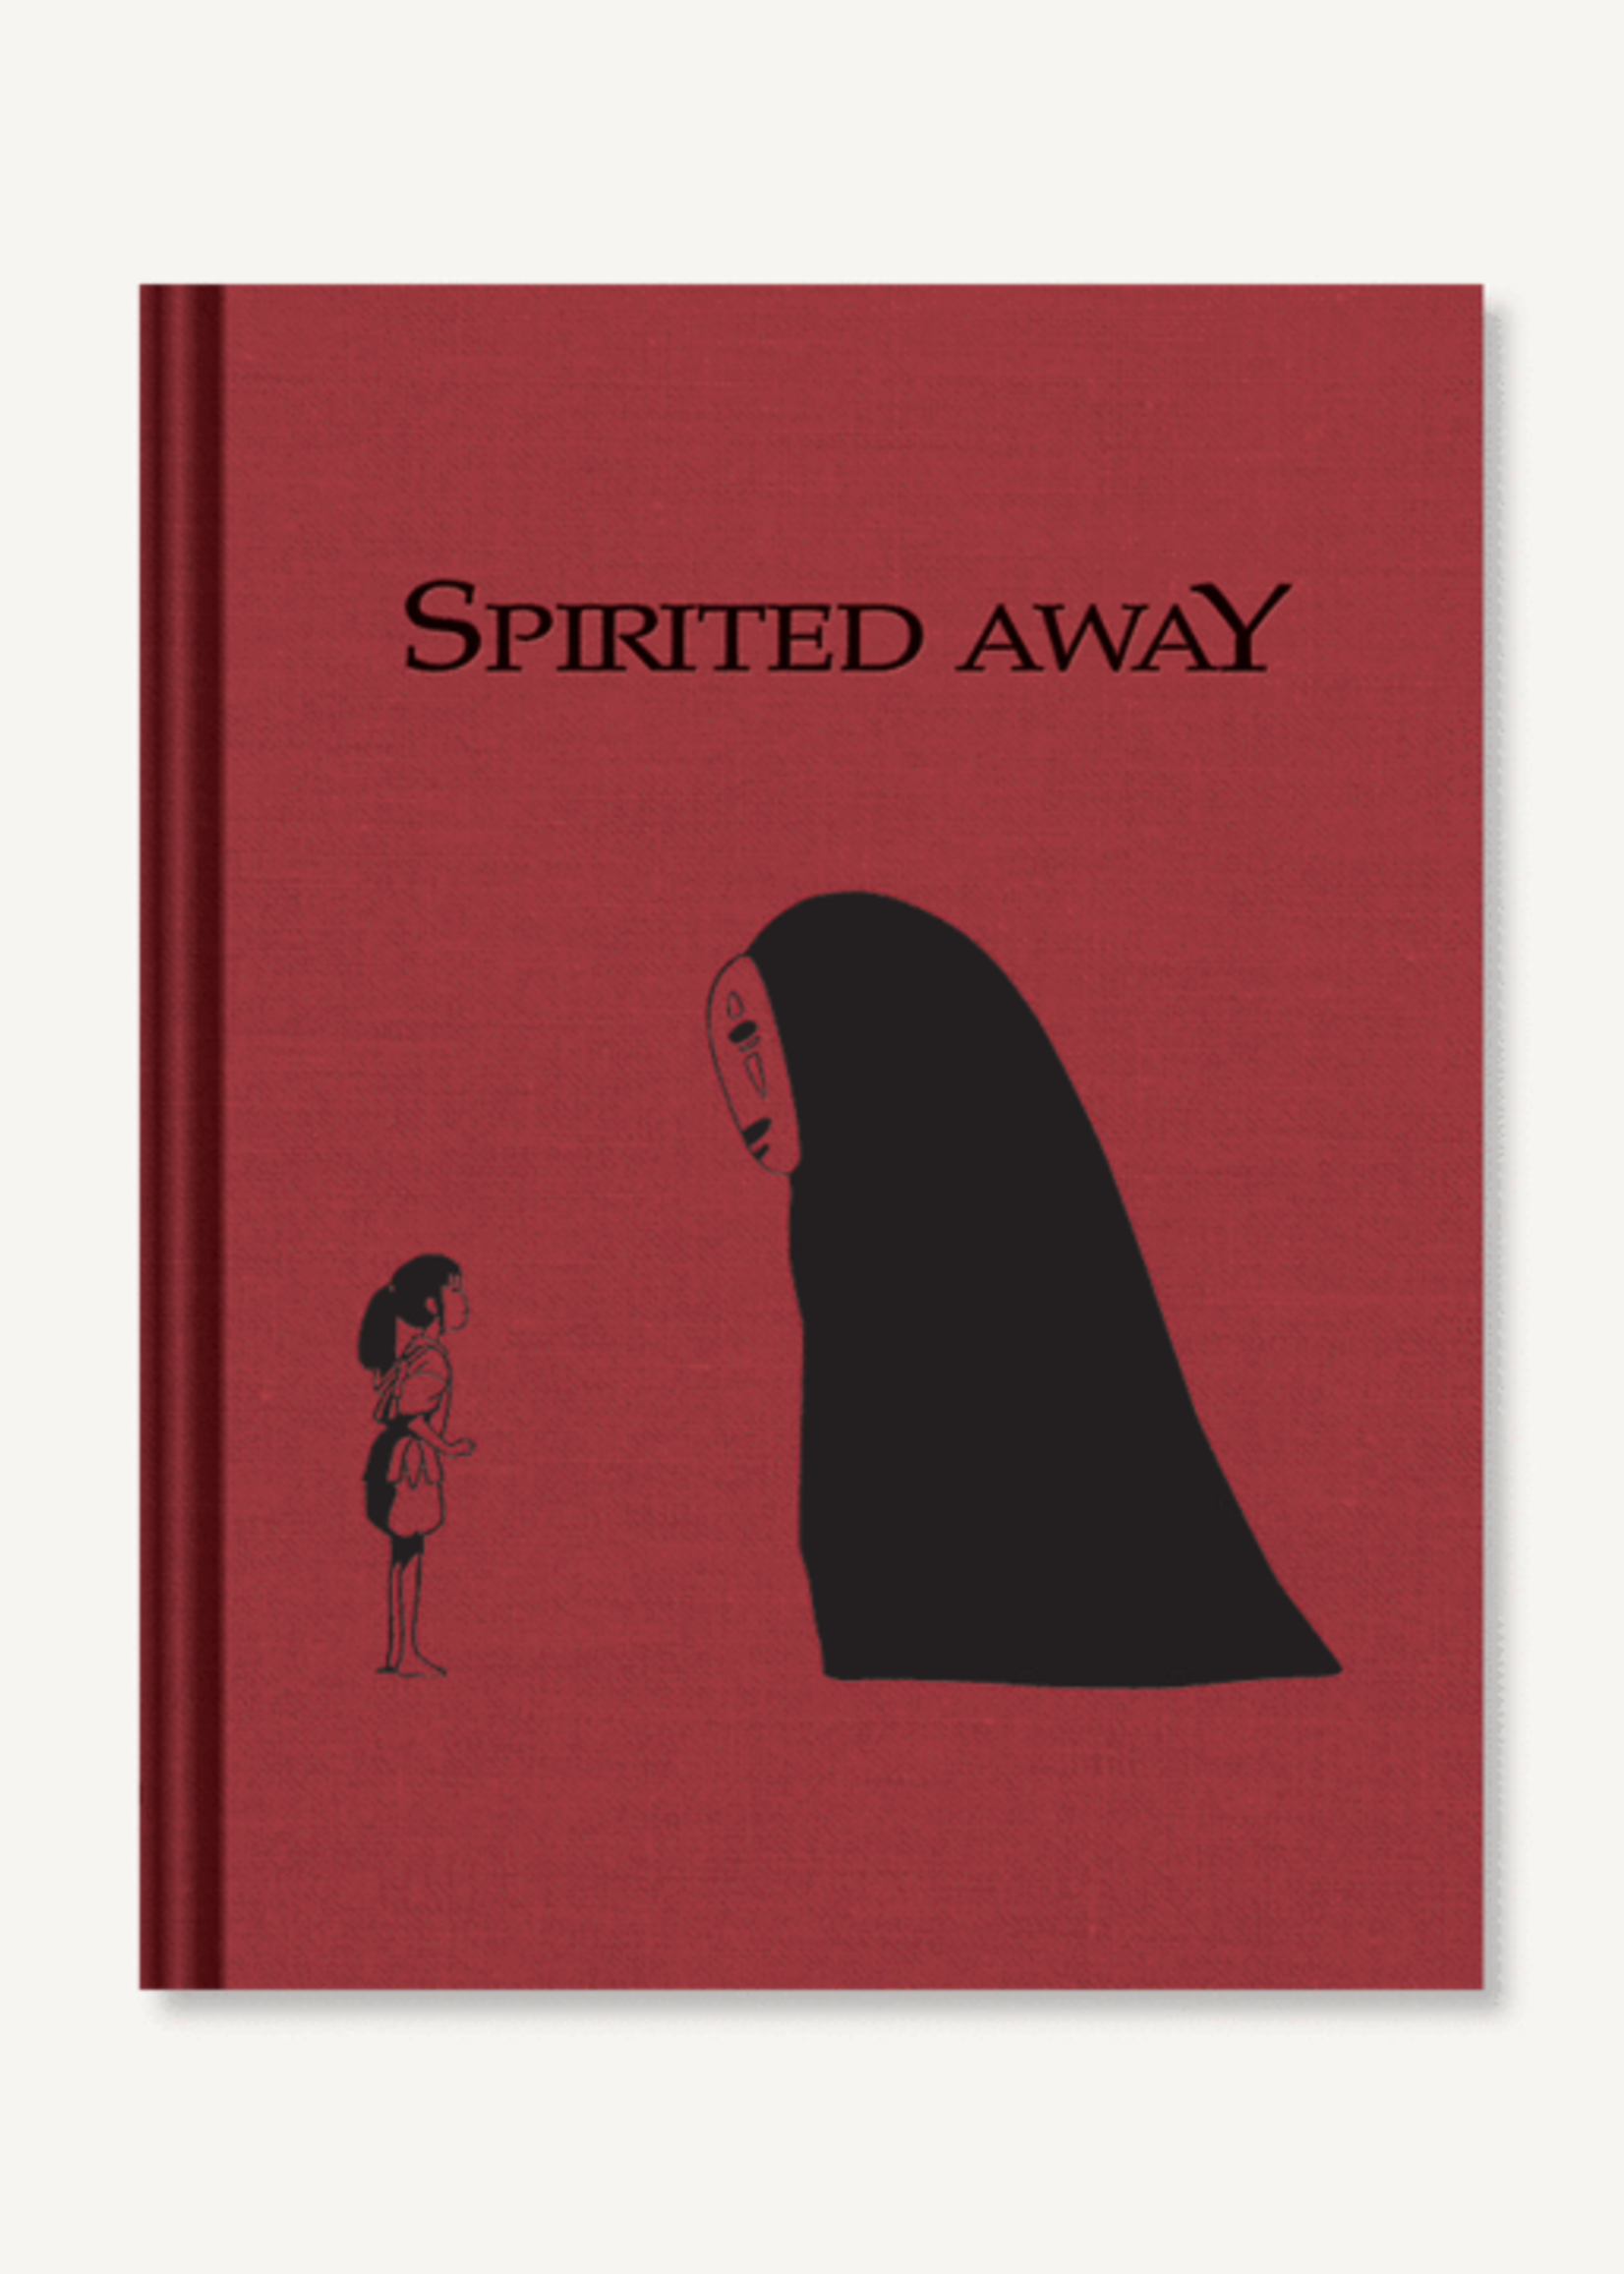 Spirited Away Sketchbook by Studio Ghibli